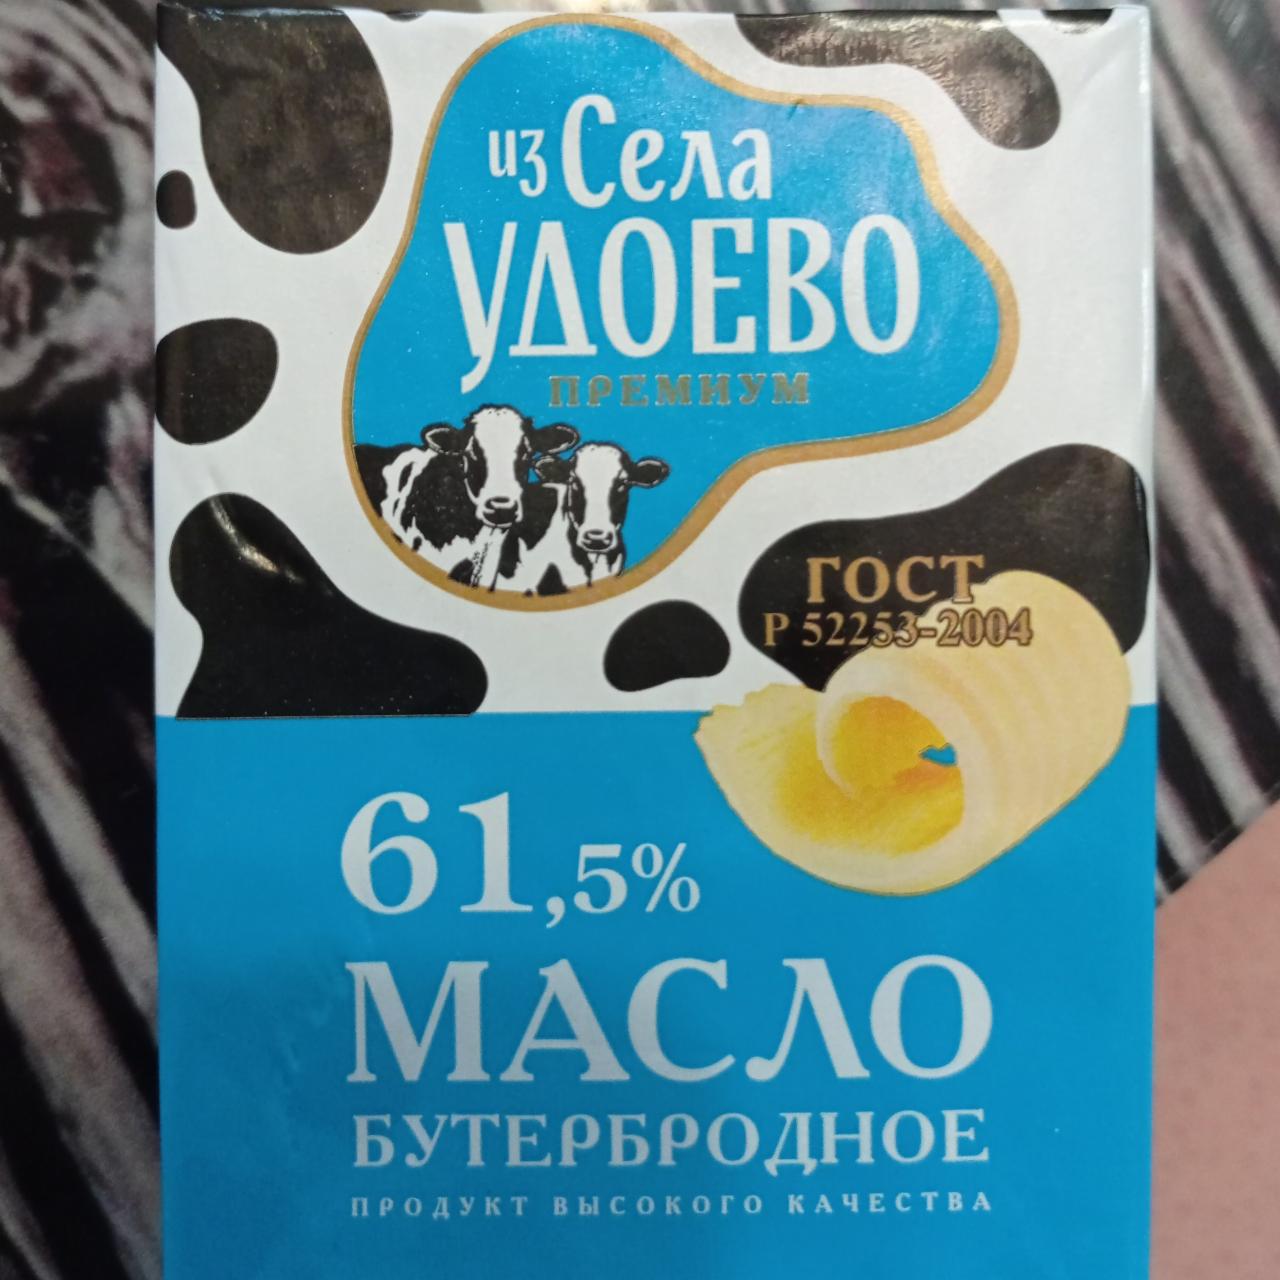 Фото - Масло сливочное 61,5% Из Села Удоево